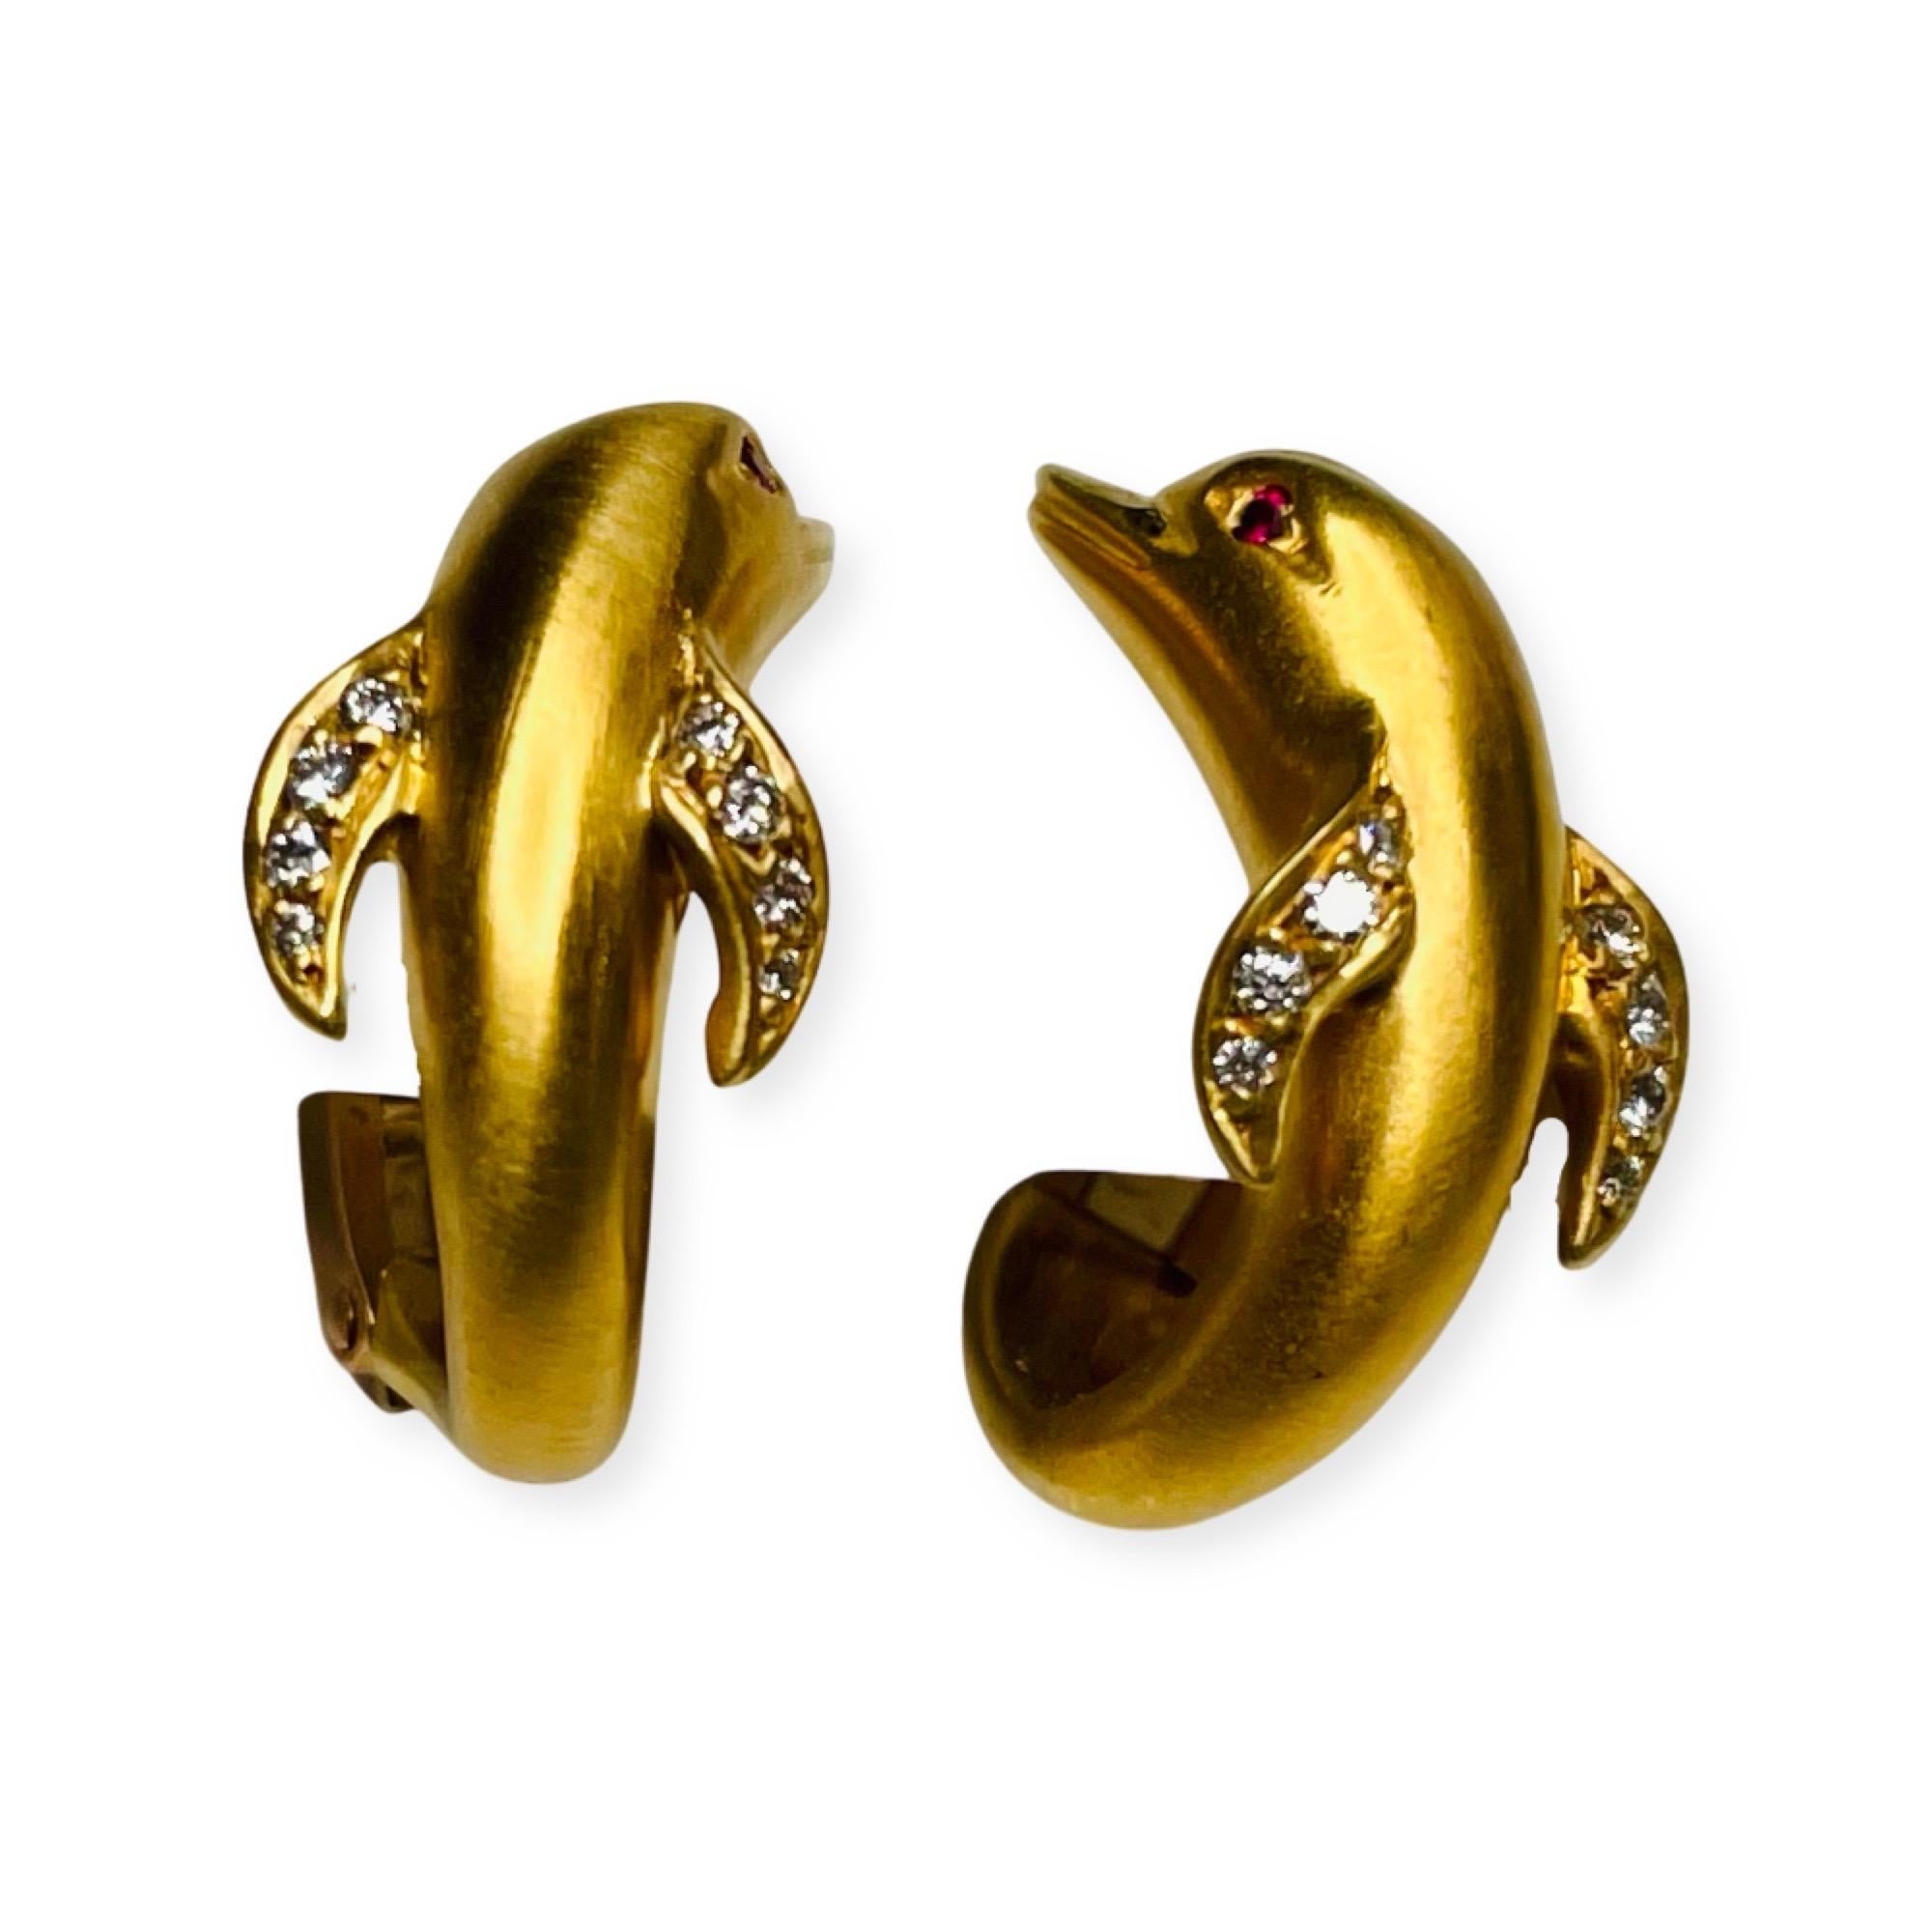 Carrera y Carrera 18K Gelbgold Diamant & Rubin Delphin Ohrringe. Die Ohrringe messen 17,5 mm x 9,3 mm. Auf jedem Delphin befinden sich 8 runde Brillanten im Vollschliff, 4 auf jeder Flosse. Insgesamt gibt es 16 Diamanten mit einem Gesamtgewicht von